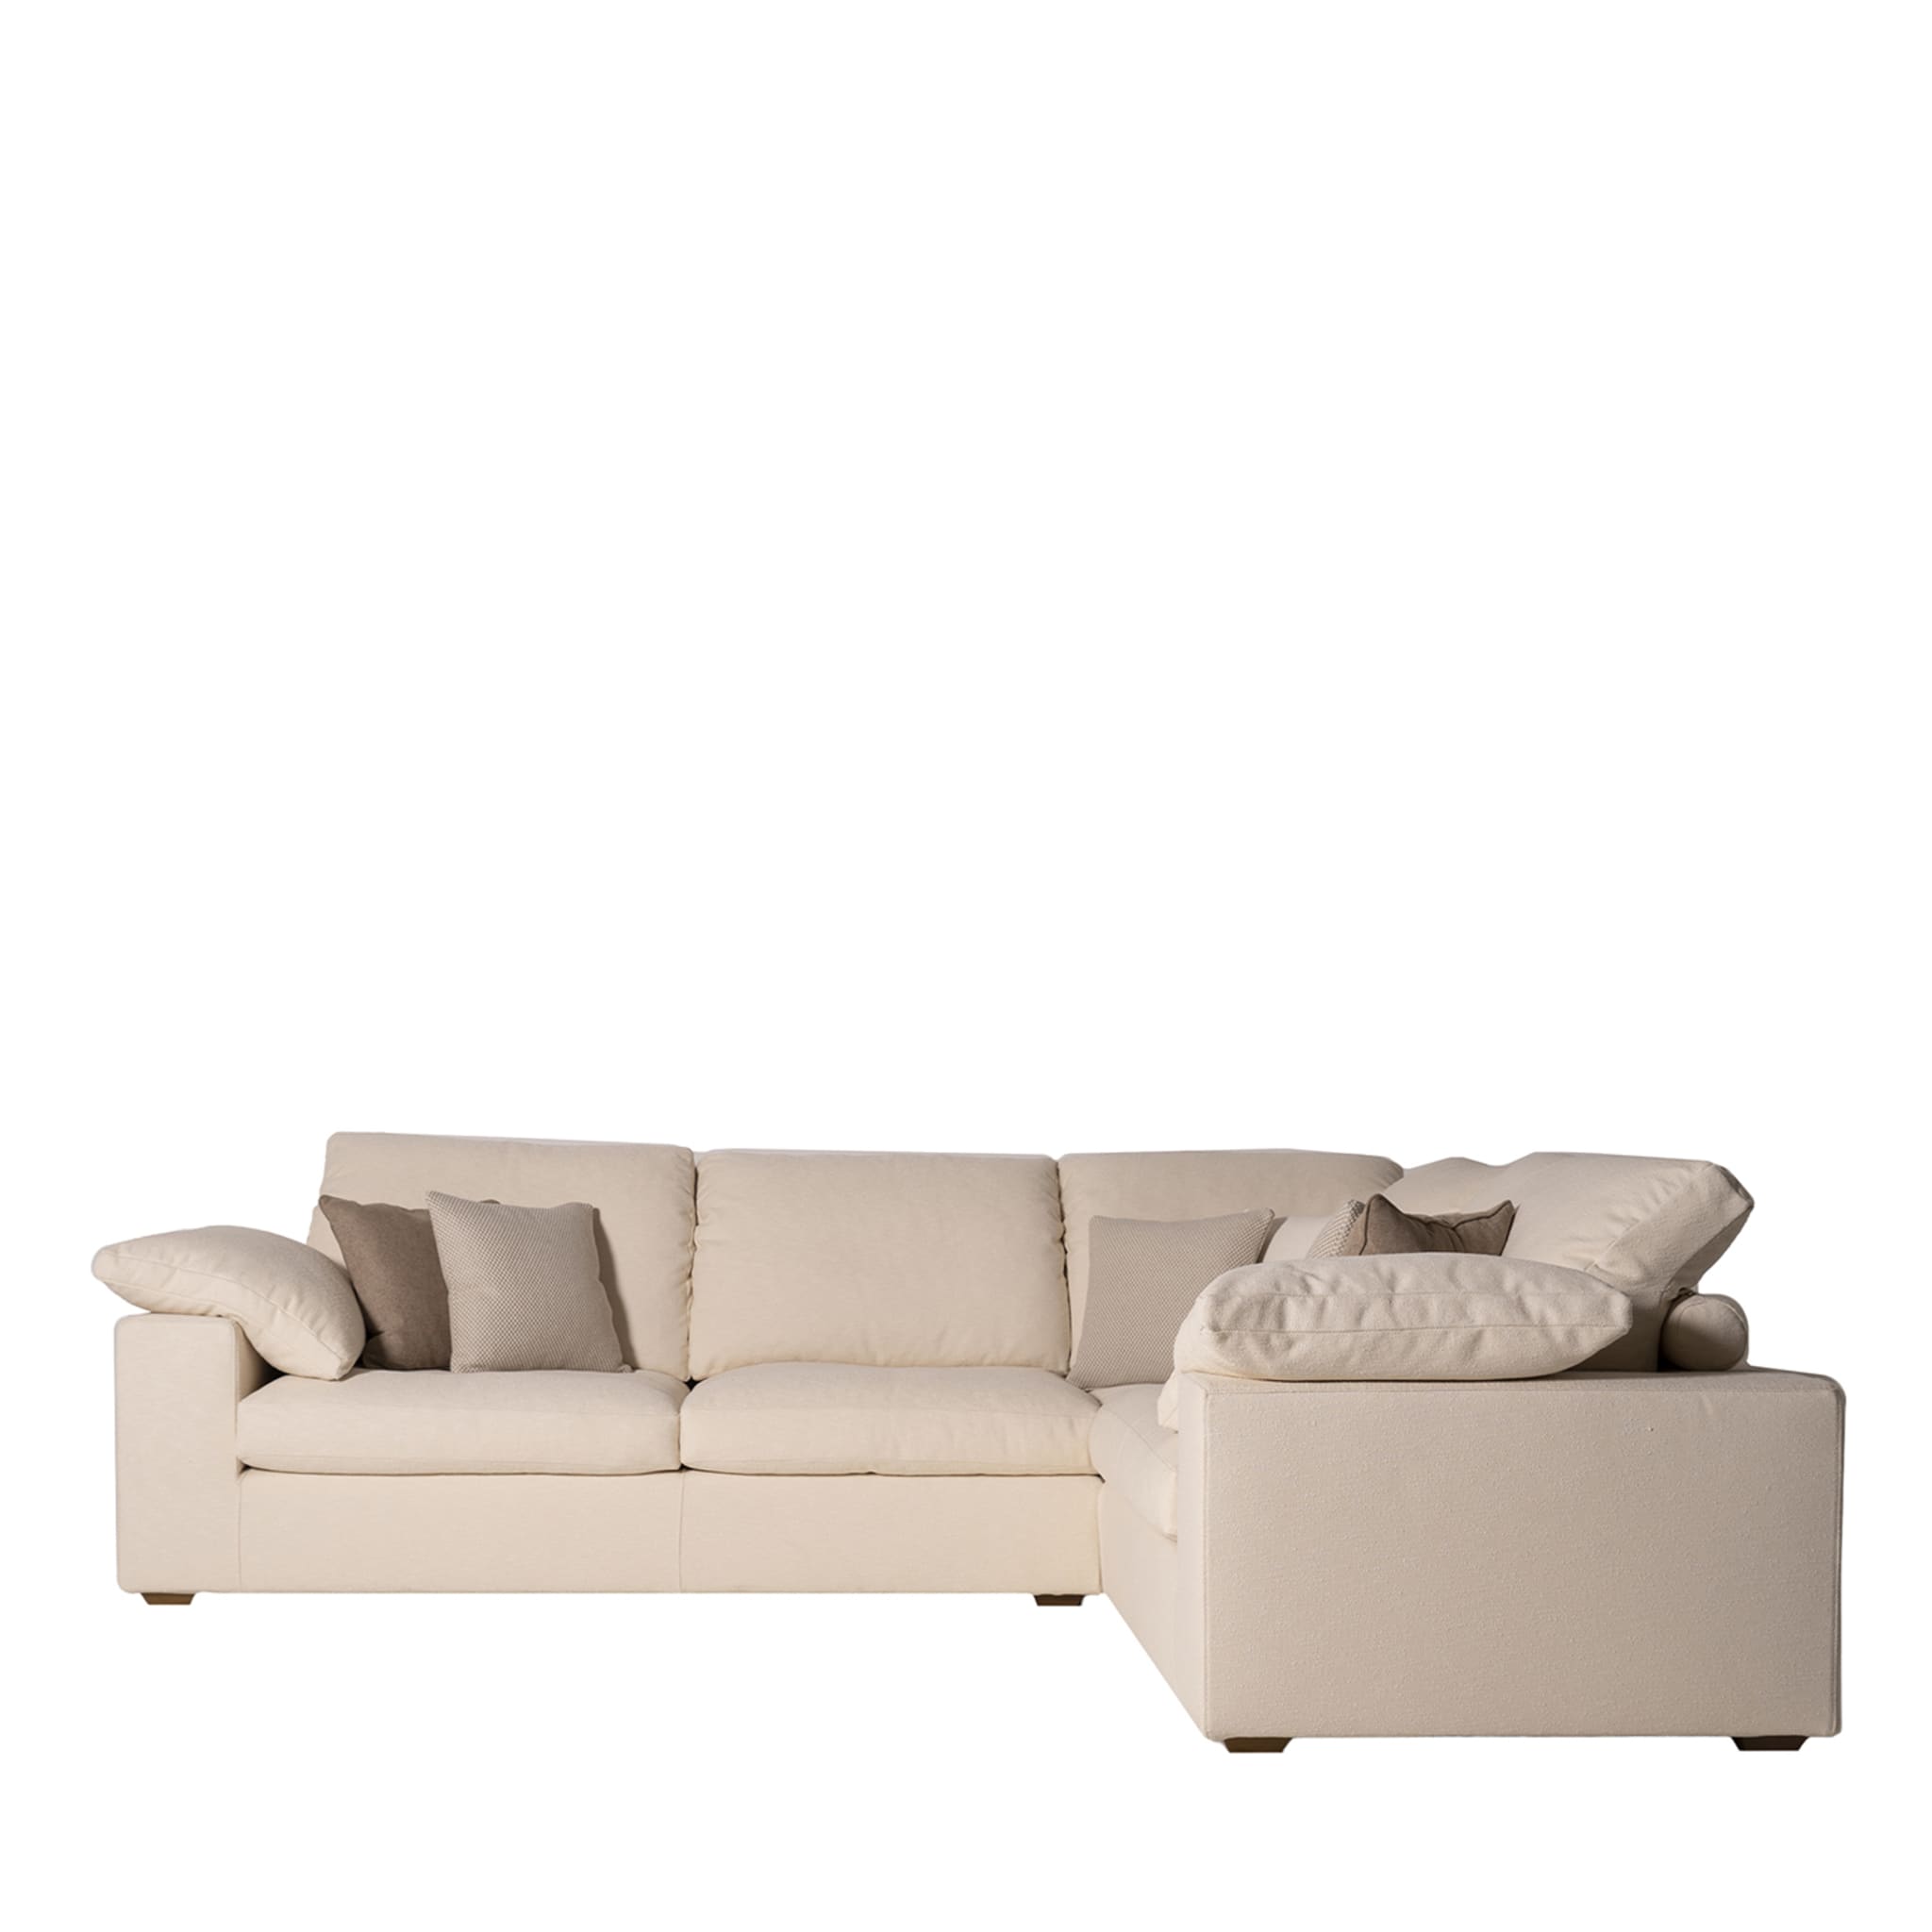 Italo White Corner Sofa by Marco & Giulio Mantellassi - Main view